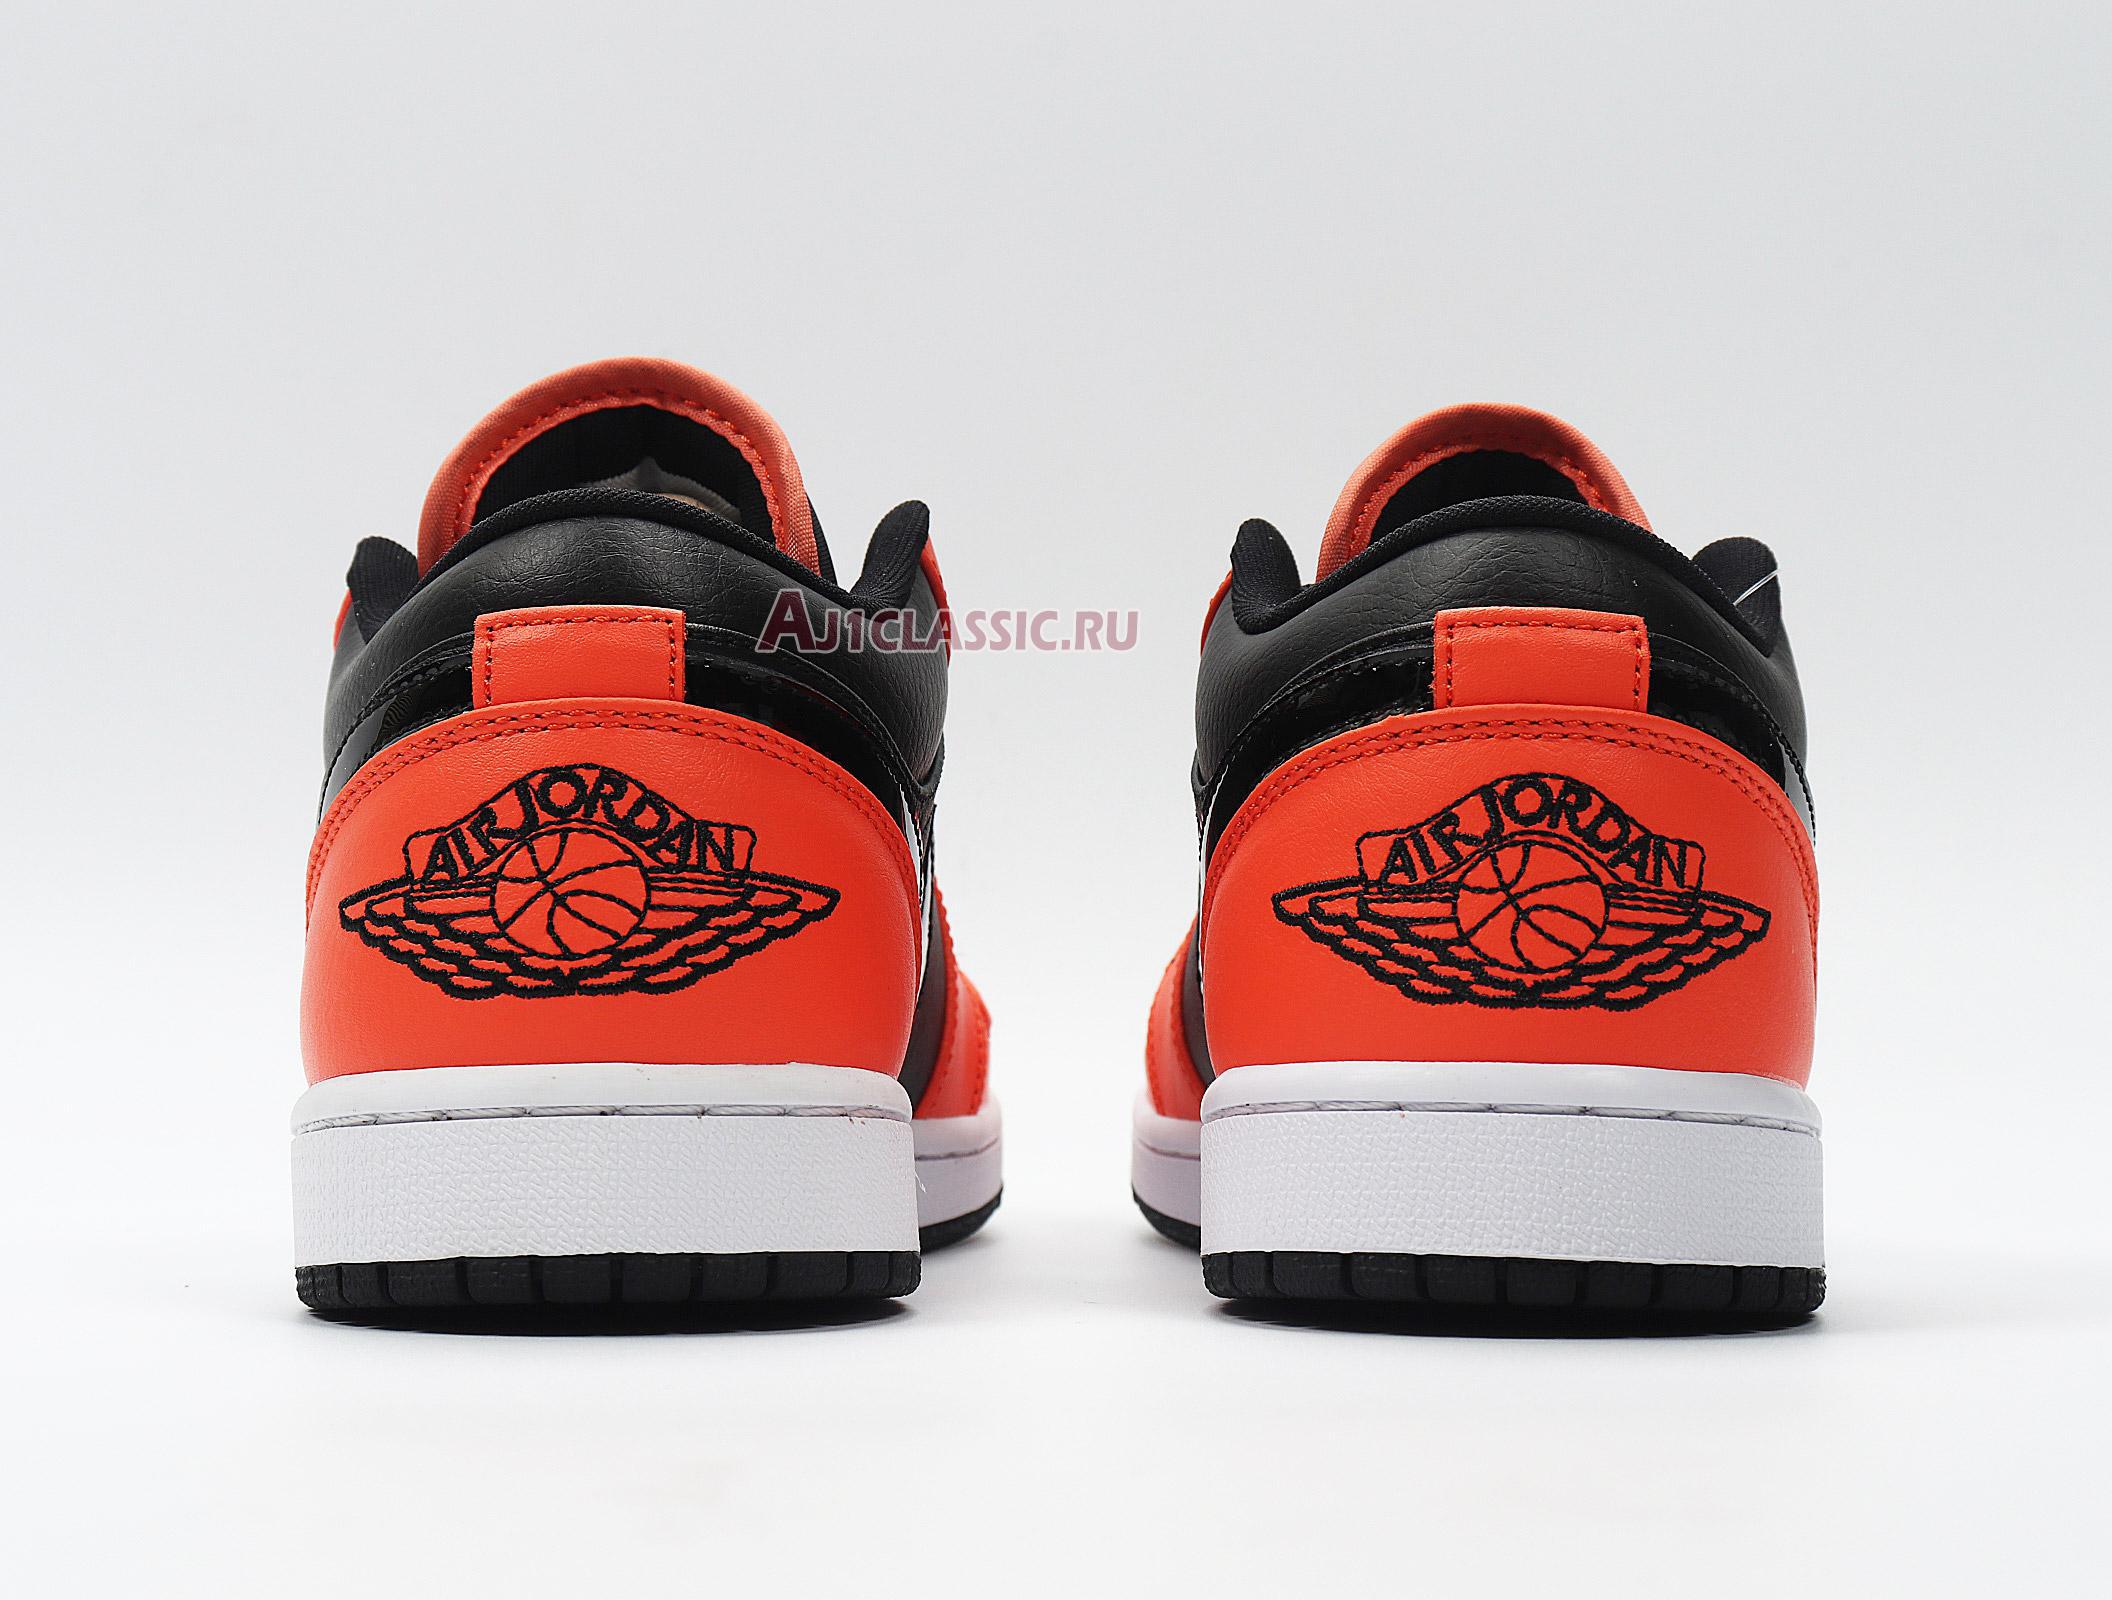 Air Jordan 1 Low "Black Orange Toe" CK3022-008